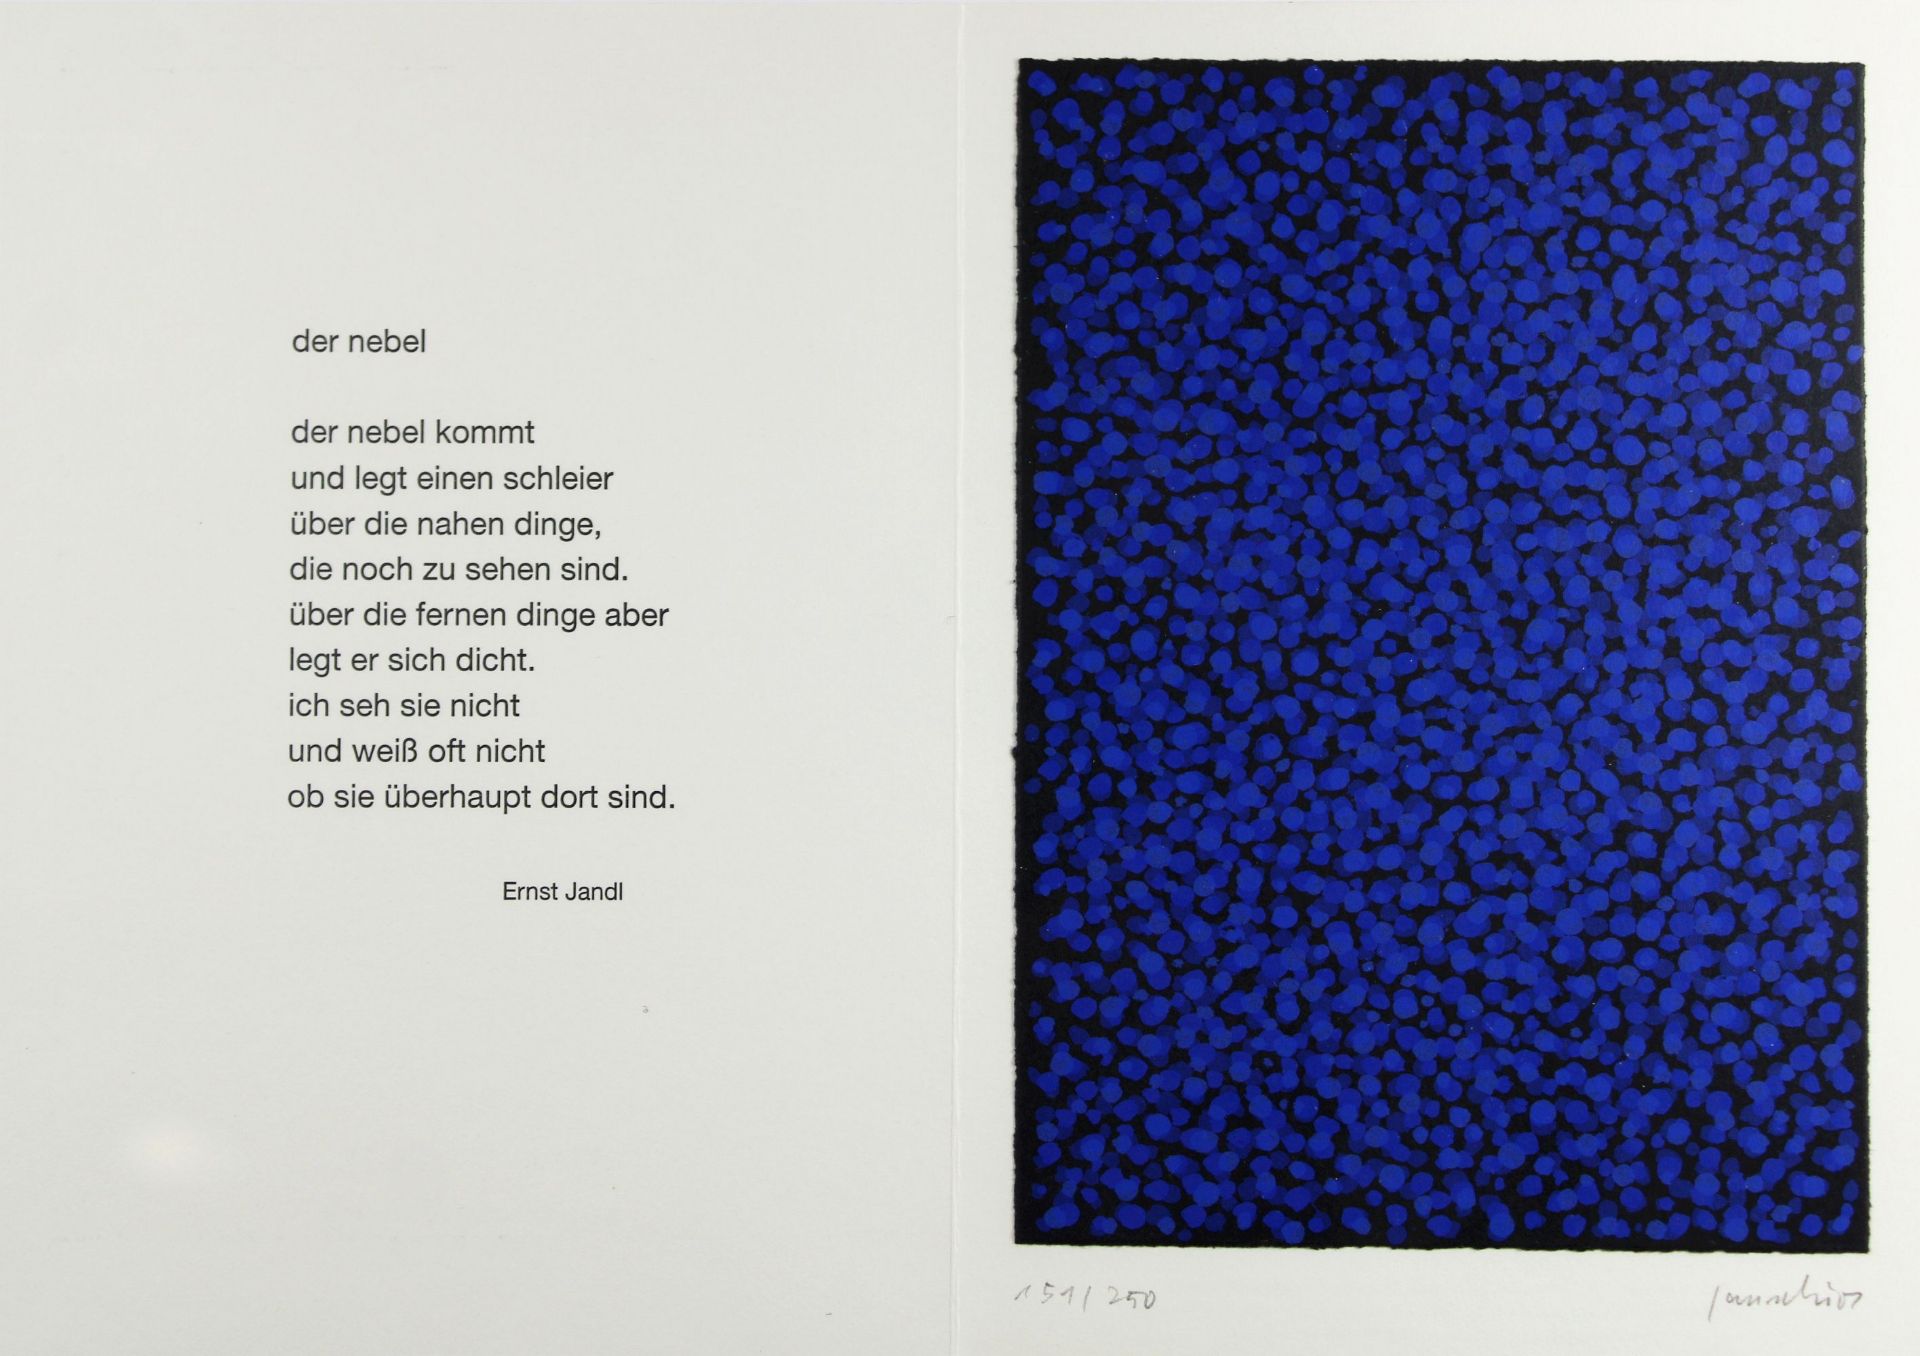 Kuno Gonschior (deutsch, 1935 - 2010), Komposition mit blauen Punkten, Farbserigrafie auf Papier, u